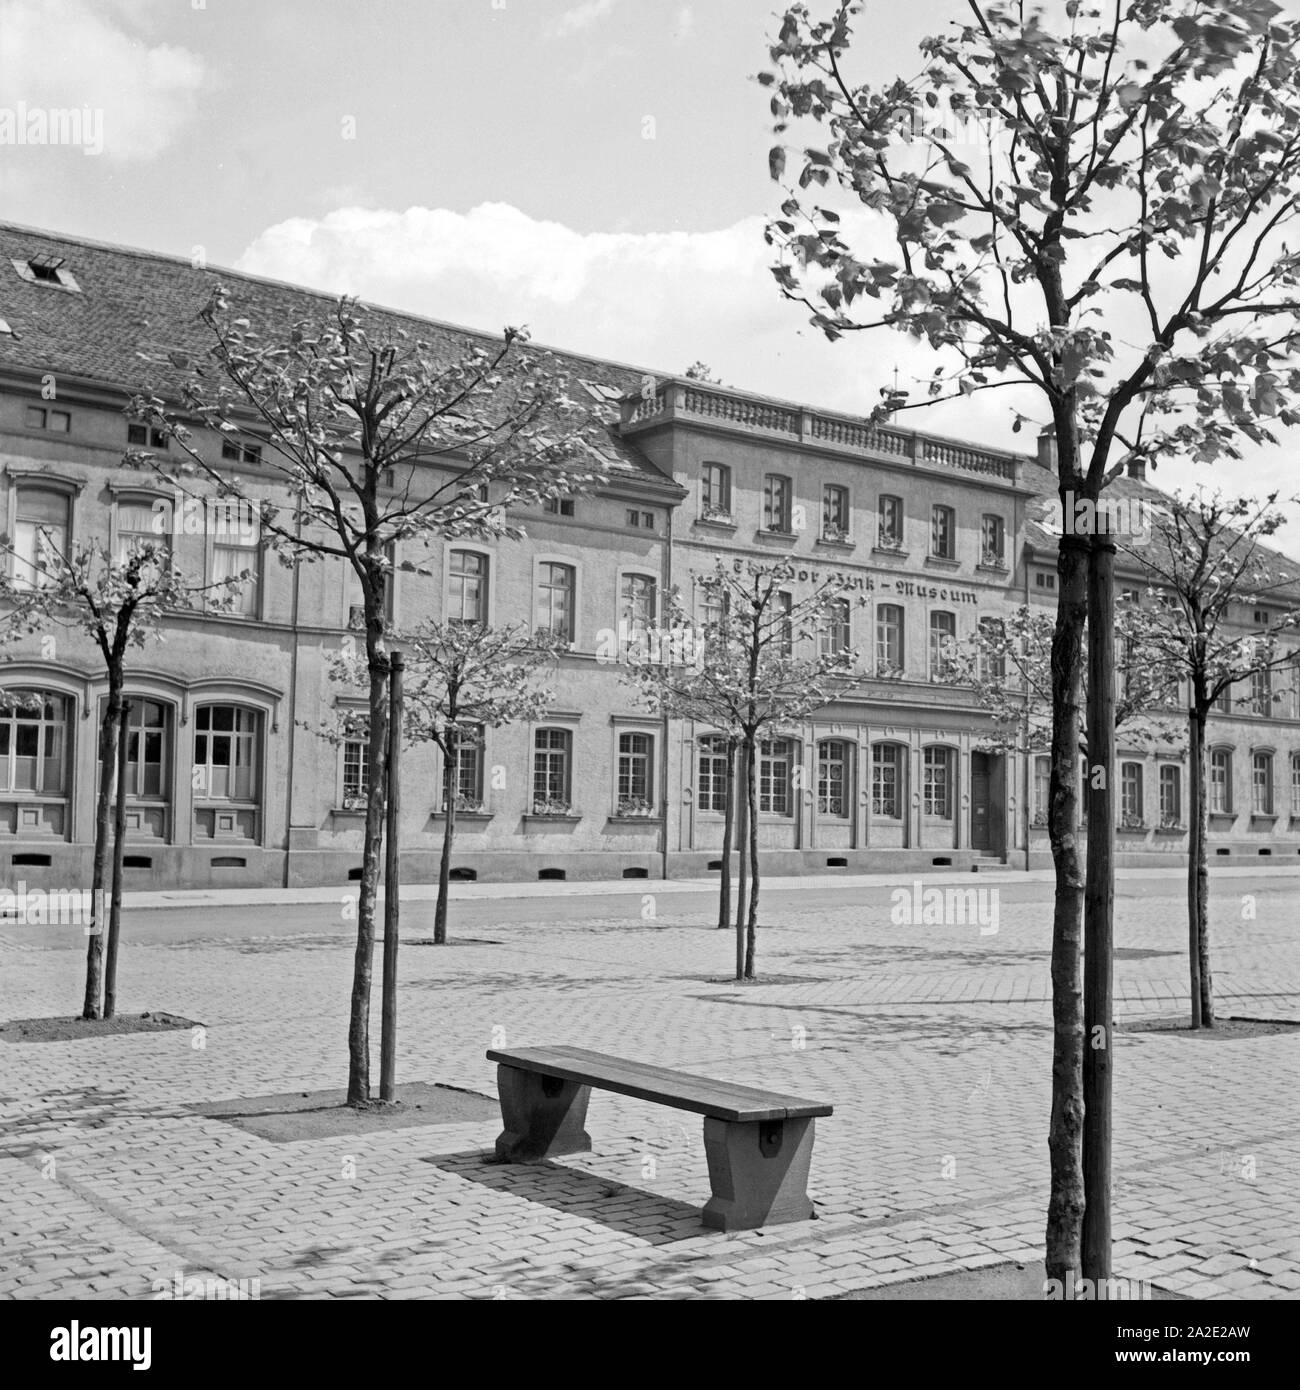 Das Theodor Zink Museum für Stadtgeschichte in Kaiserslautern, Deutschland 1930er Jahre. Il Theodor Zink museo presenta reperti della storia della città di Kaiserslautern, Germania 1930s. Foto Stock